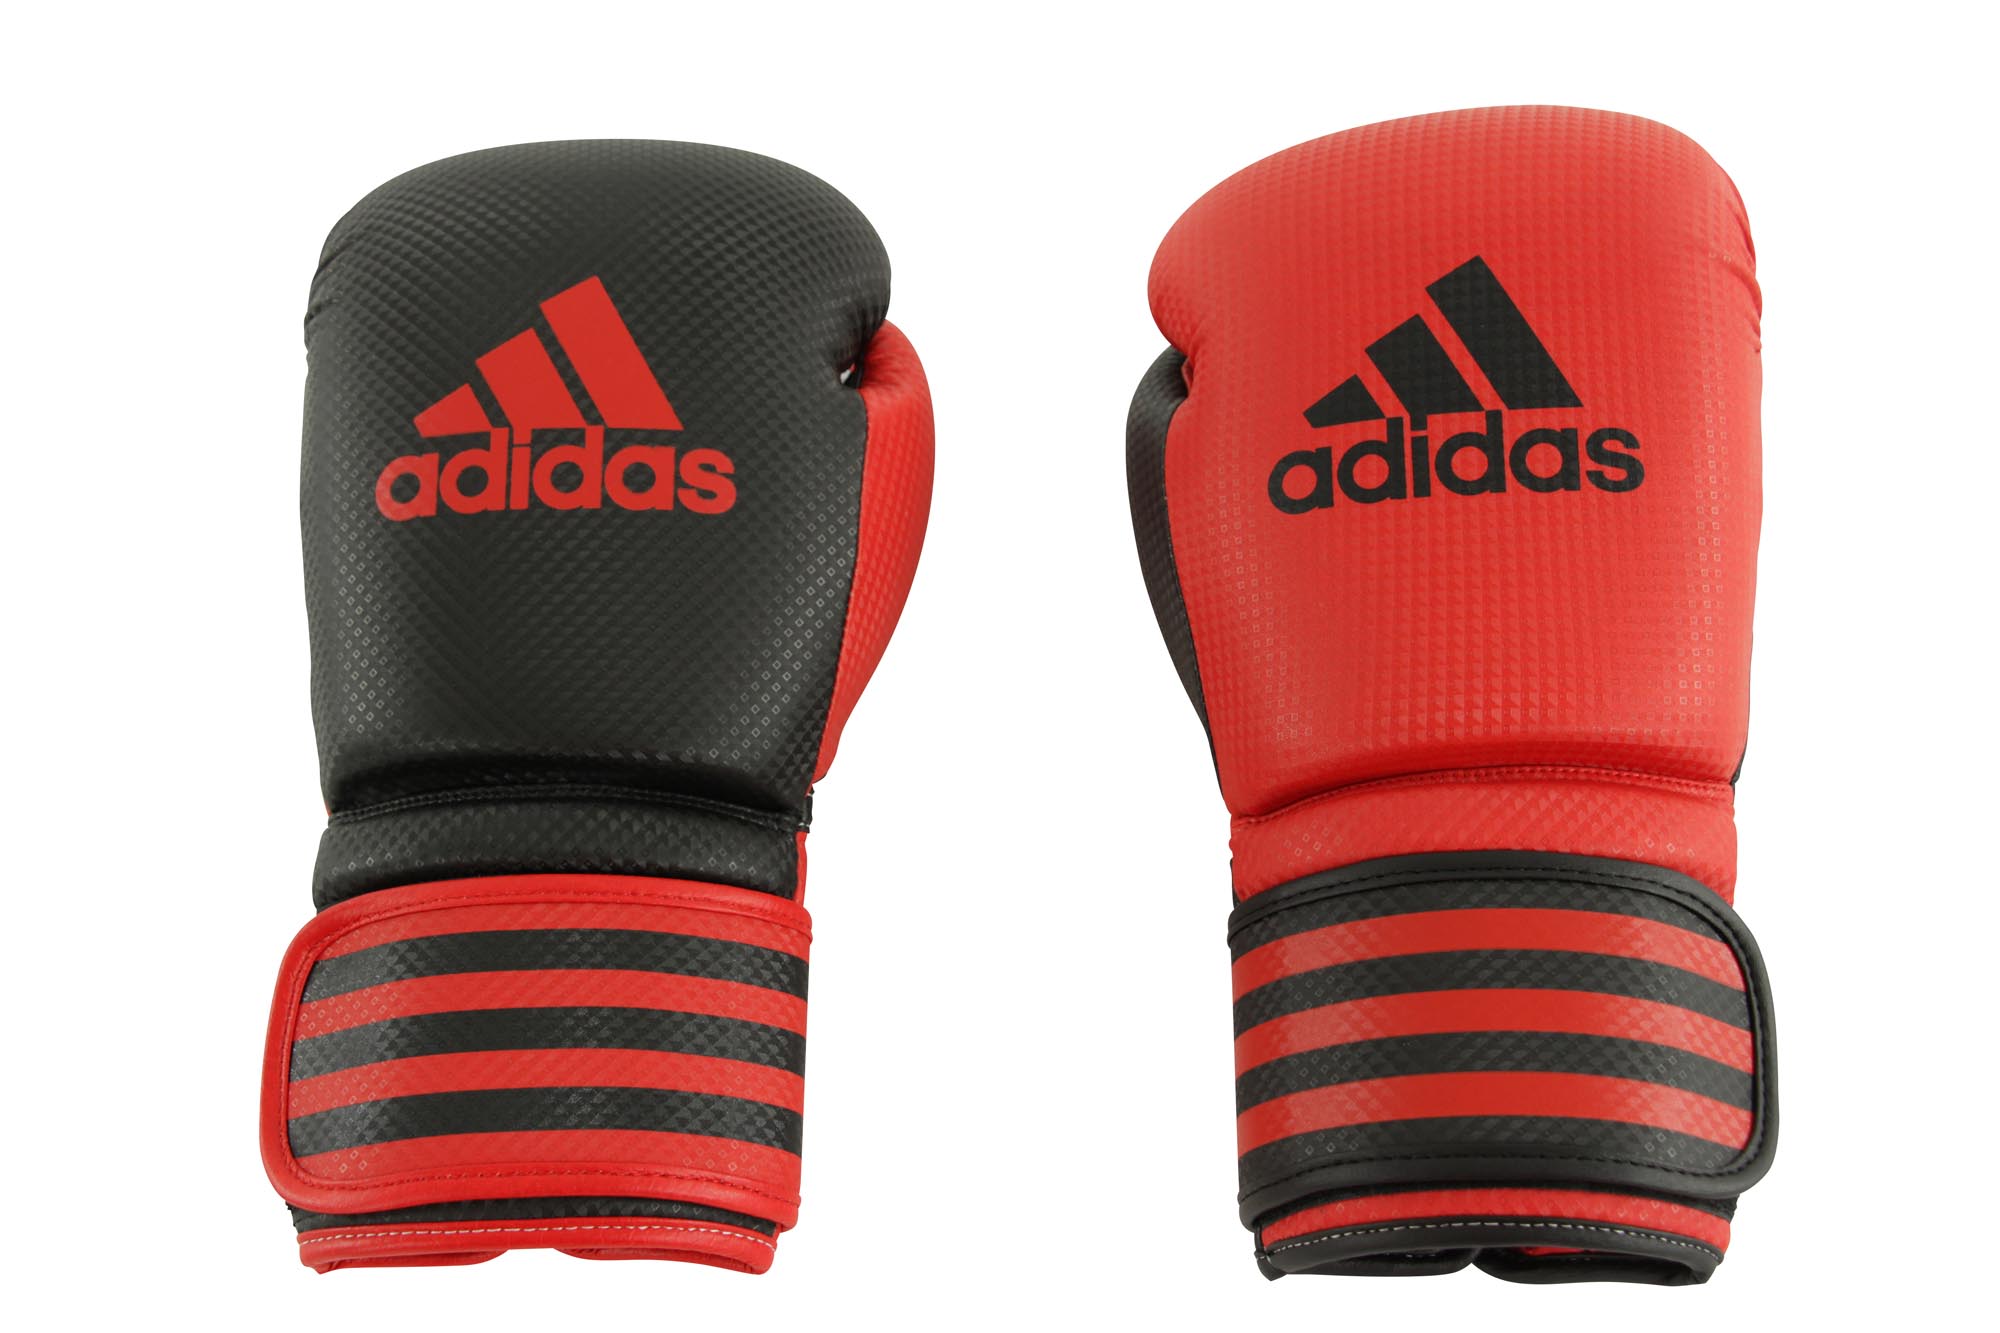 Адидас бокс. Снарядные перчатки адидас. Перчатки adidas Power 200 Duo mat". Боксерские перчатки adidas. Перчатки для бокса адидас.